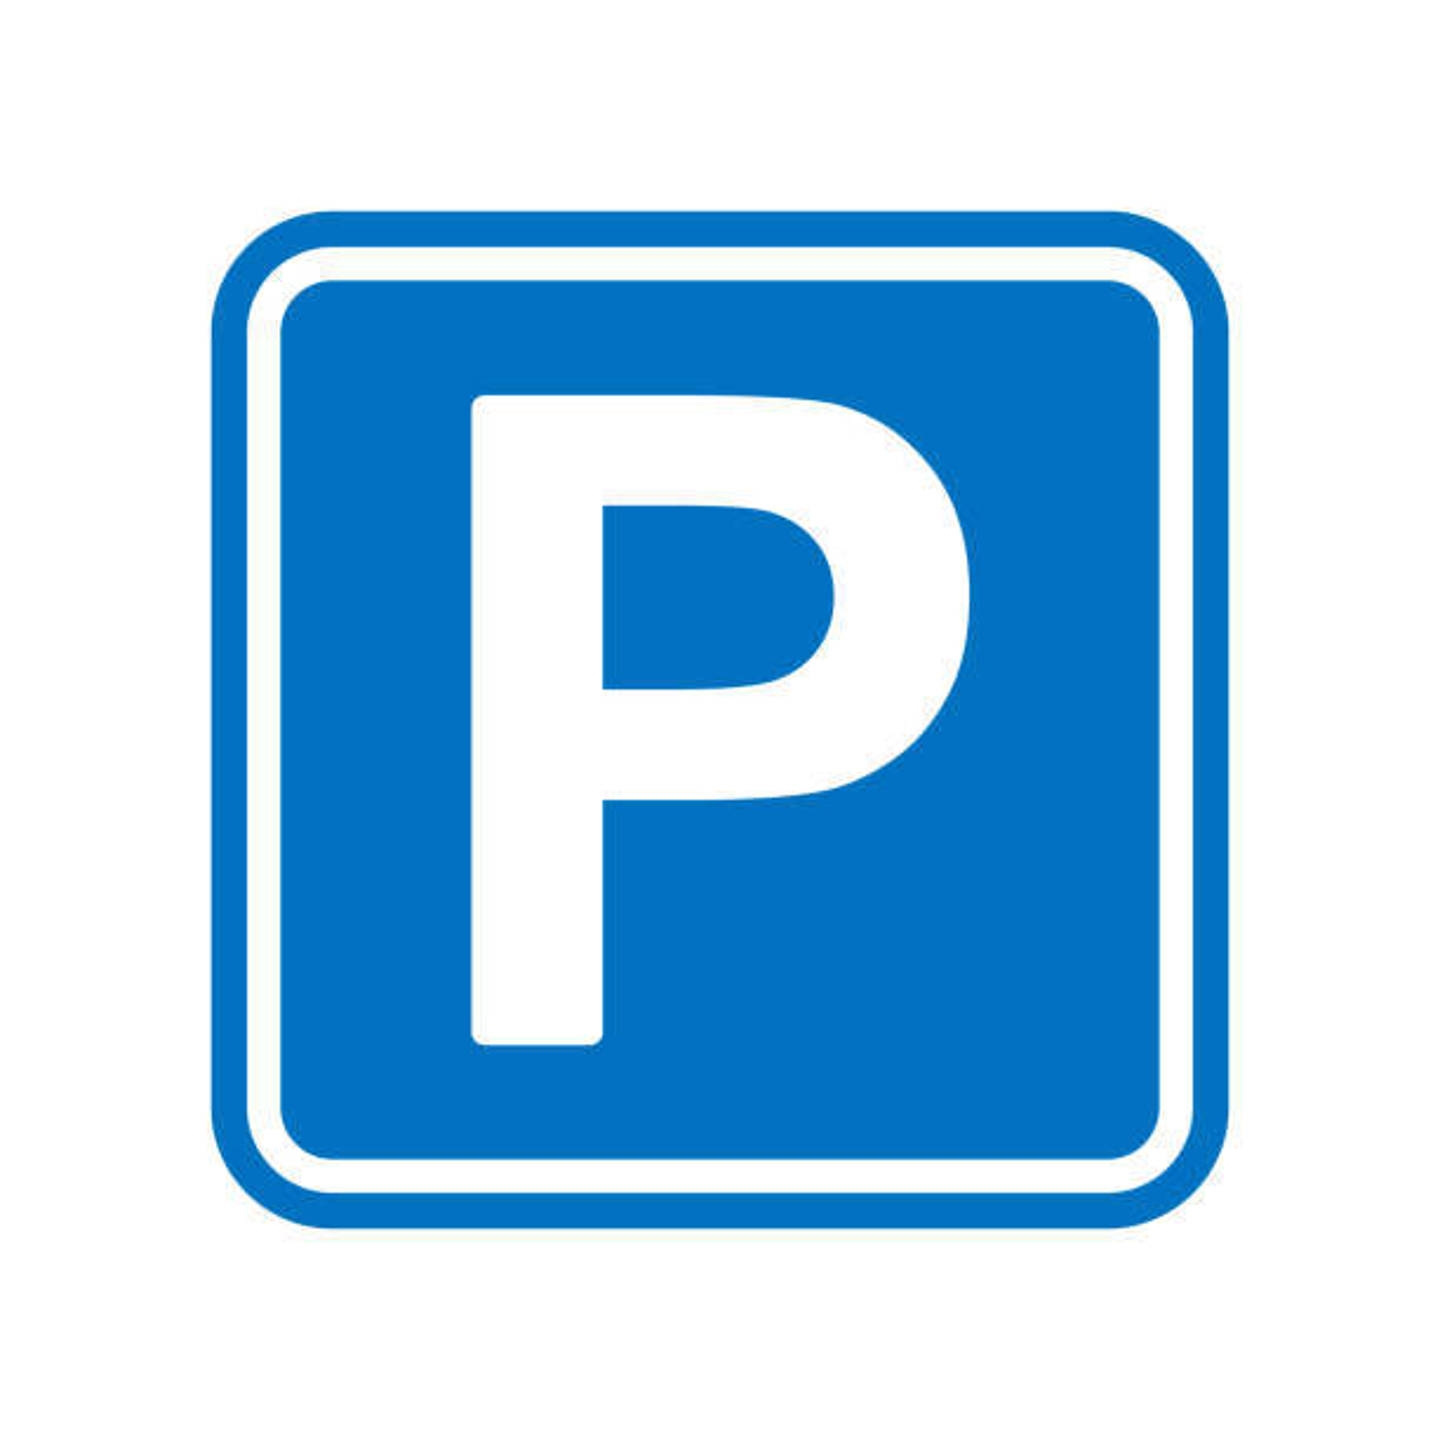 Parking à vendre à Woluwe-Saint-Lambert 1200 72100.00€  chambres 12.50m² - annonce 40048